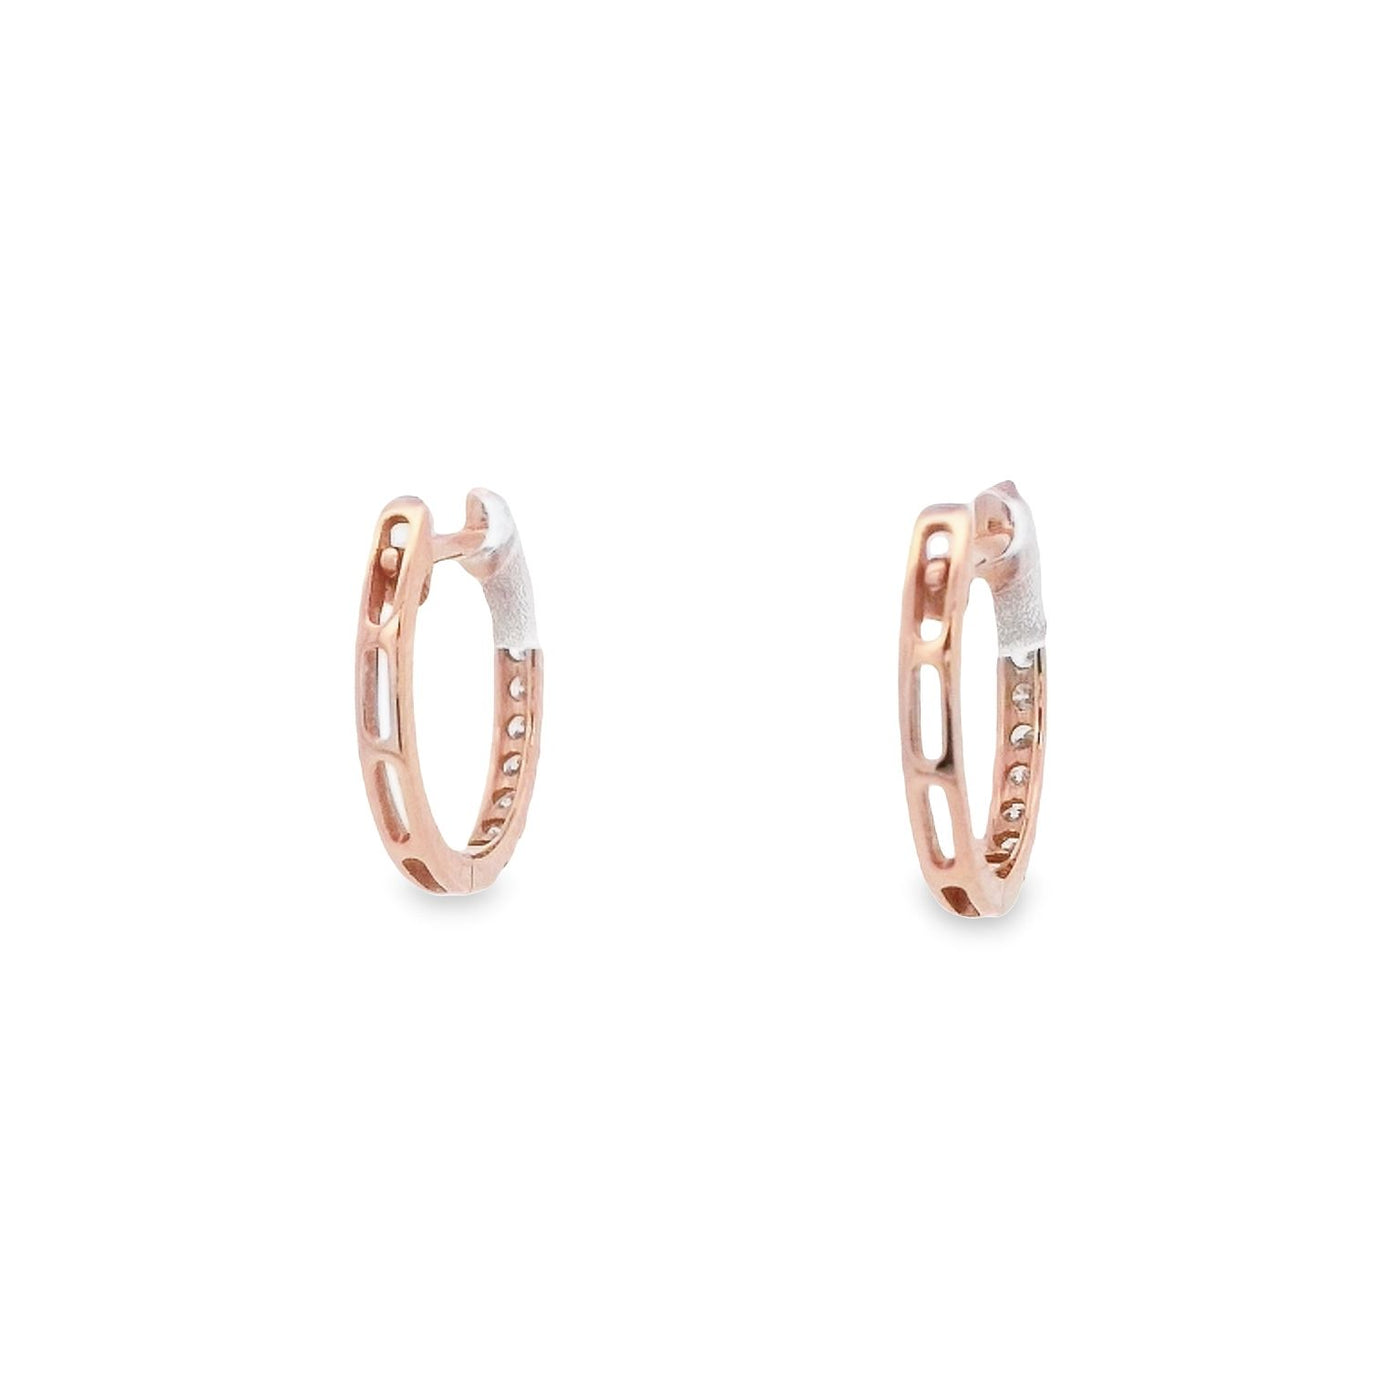 SANJ Jewellery18k Rose Gold Oval Diamond Hoop Earrings